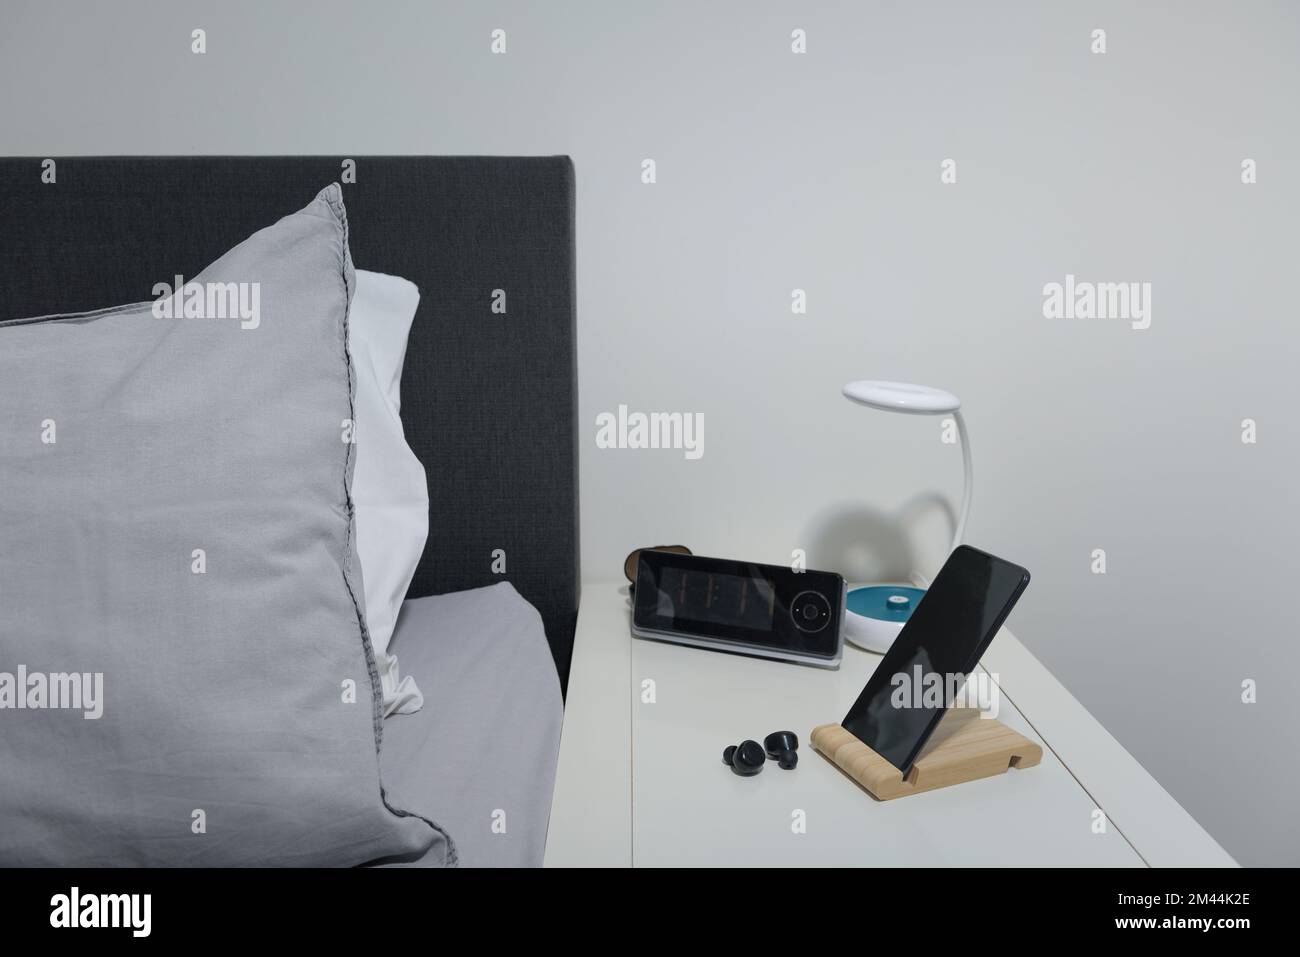 Für das Schlafzimmer. Smartphone auf dem Nachttisch mit Lampe, Headset, Uhr und Bett. Stockfoto